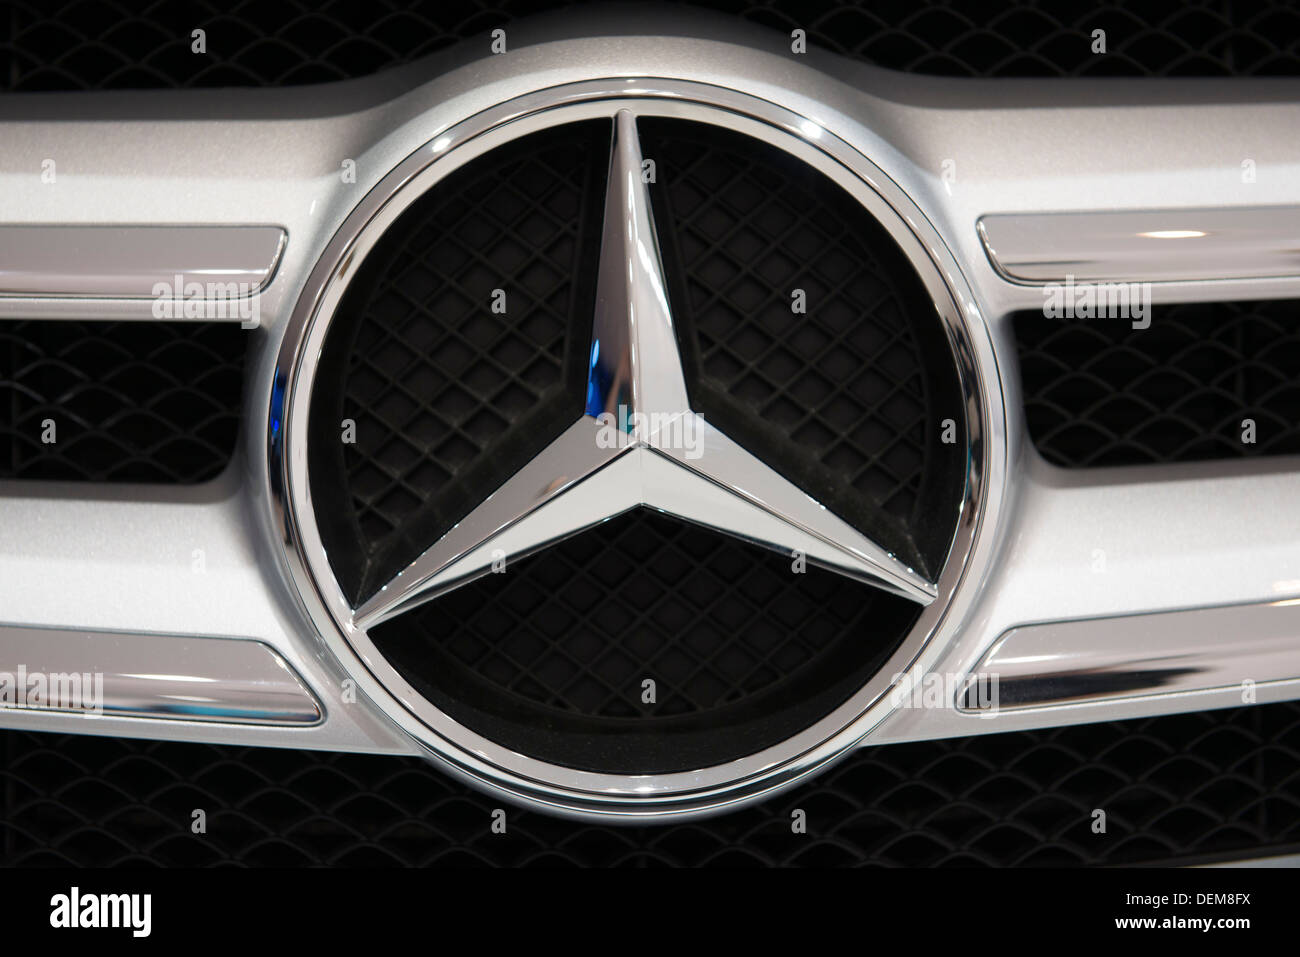 Francfort - 16 SEPTEMBRE : la Mercedes-Benz emblème sur une Mercedes car à la 65ème IAA (Internationale Automobil Ausstellung) Banque D'Images